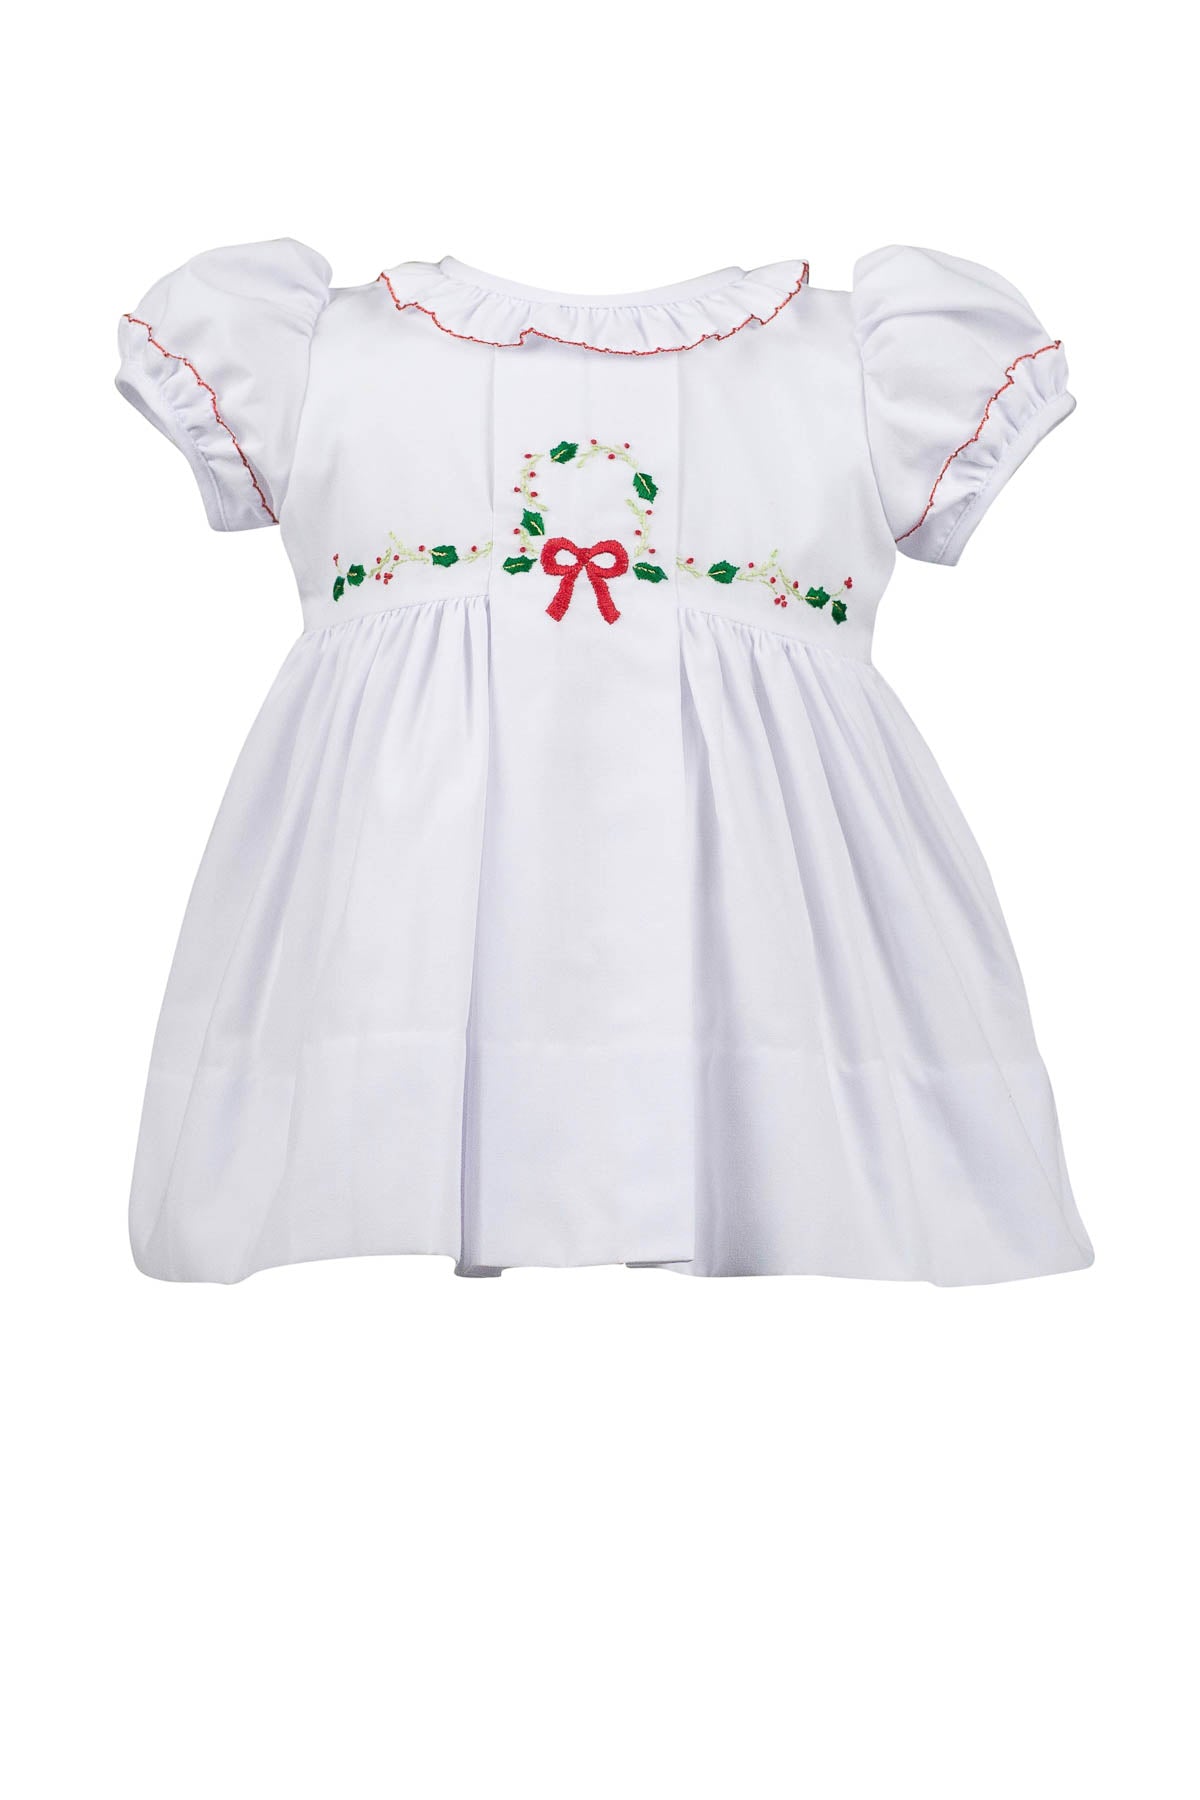 Yuletide White Christmas Dress (2T,3T,4T,5,6)